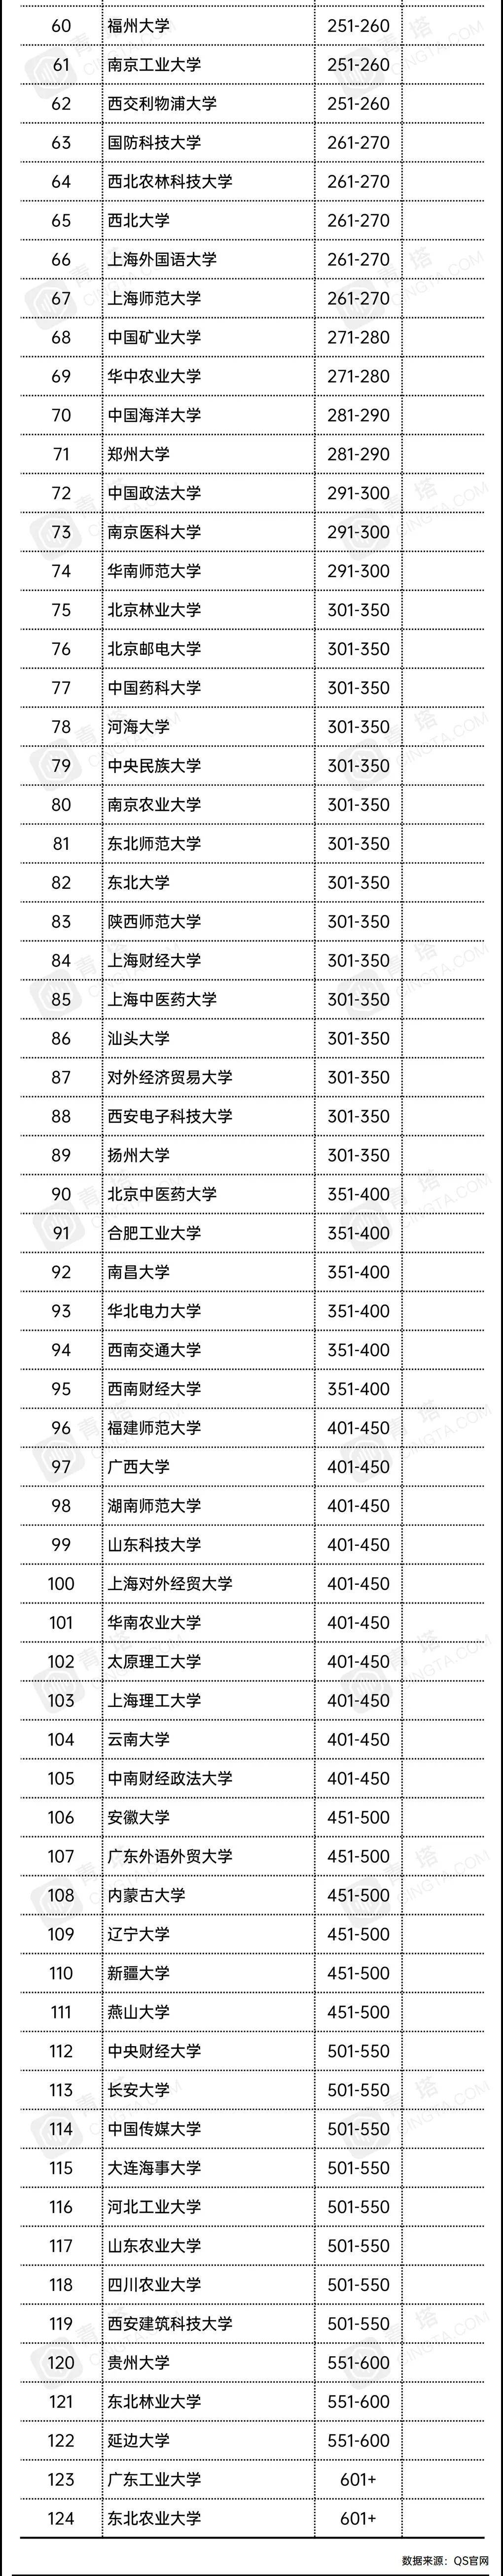 中国内地高校2020年_2020软科中国大学重大成果100强:清华位列第一,江苏高